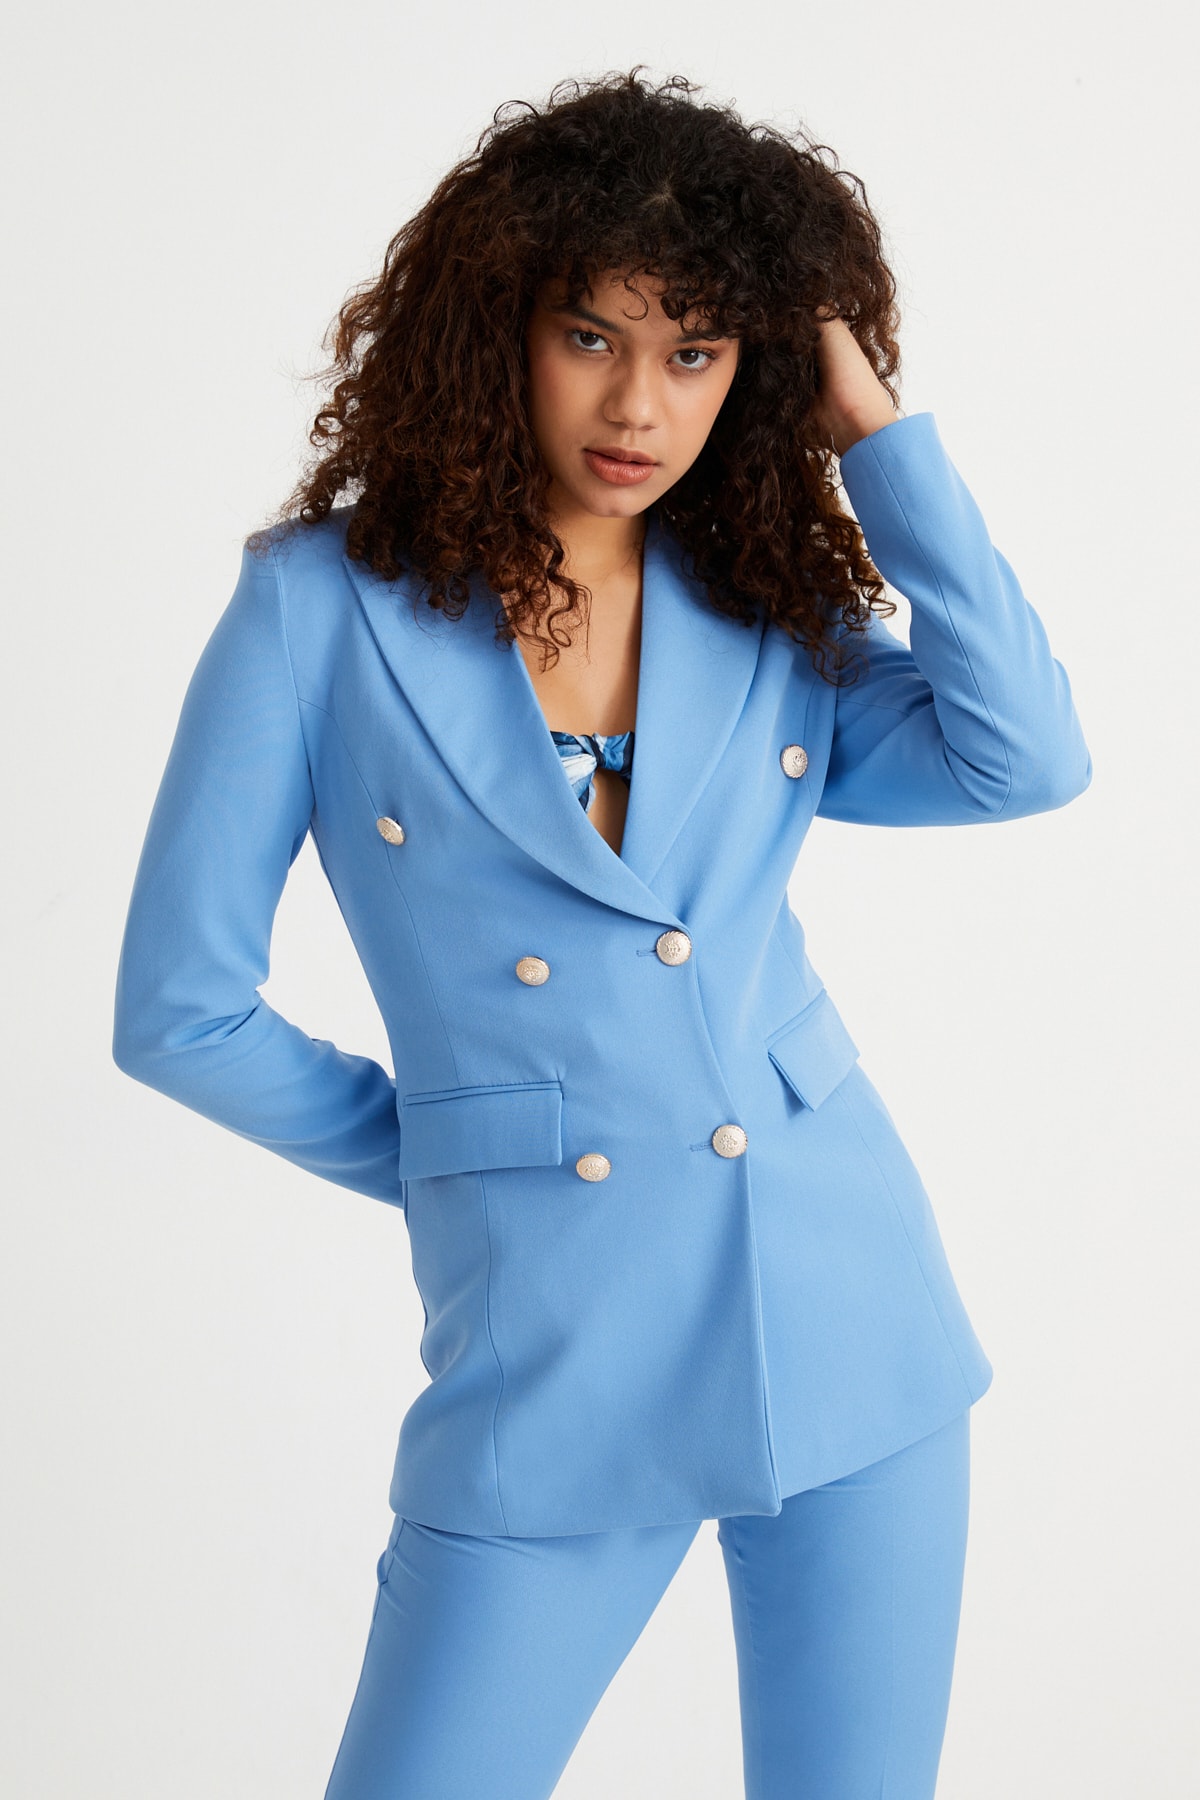 کت و شلوار آبی زنانه Rmz Style مدل کمربنددار